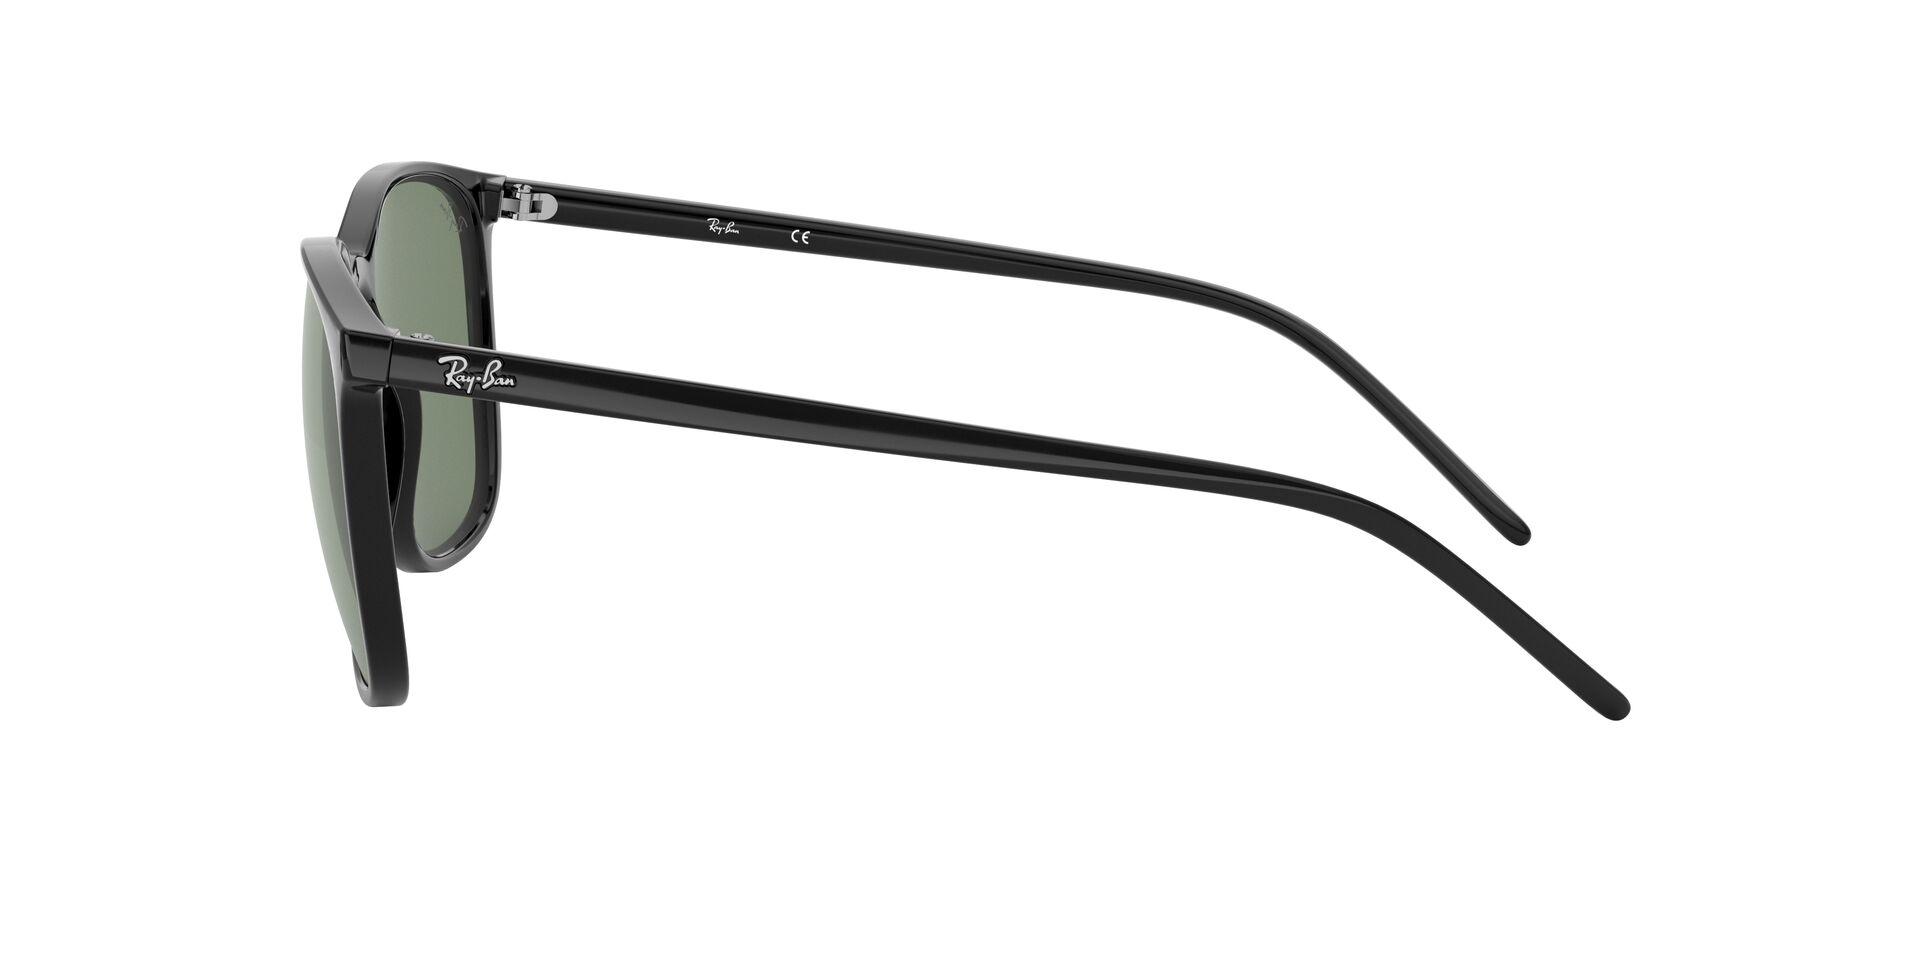 Mắt Kính Ray-Ban  - RB4387F 901/71 -Sunglasses